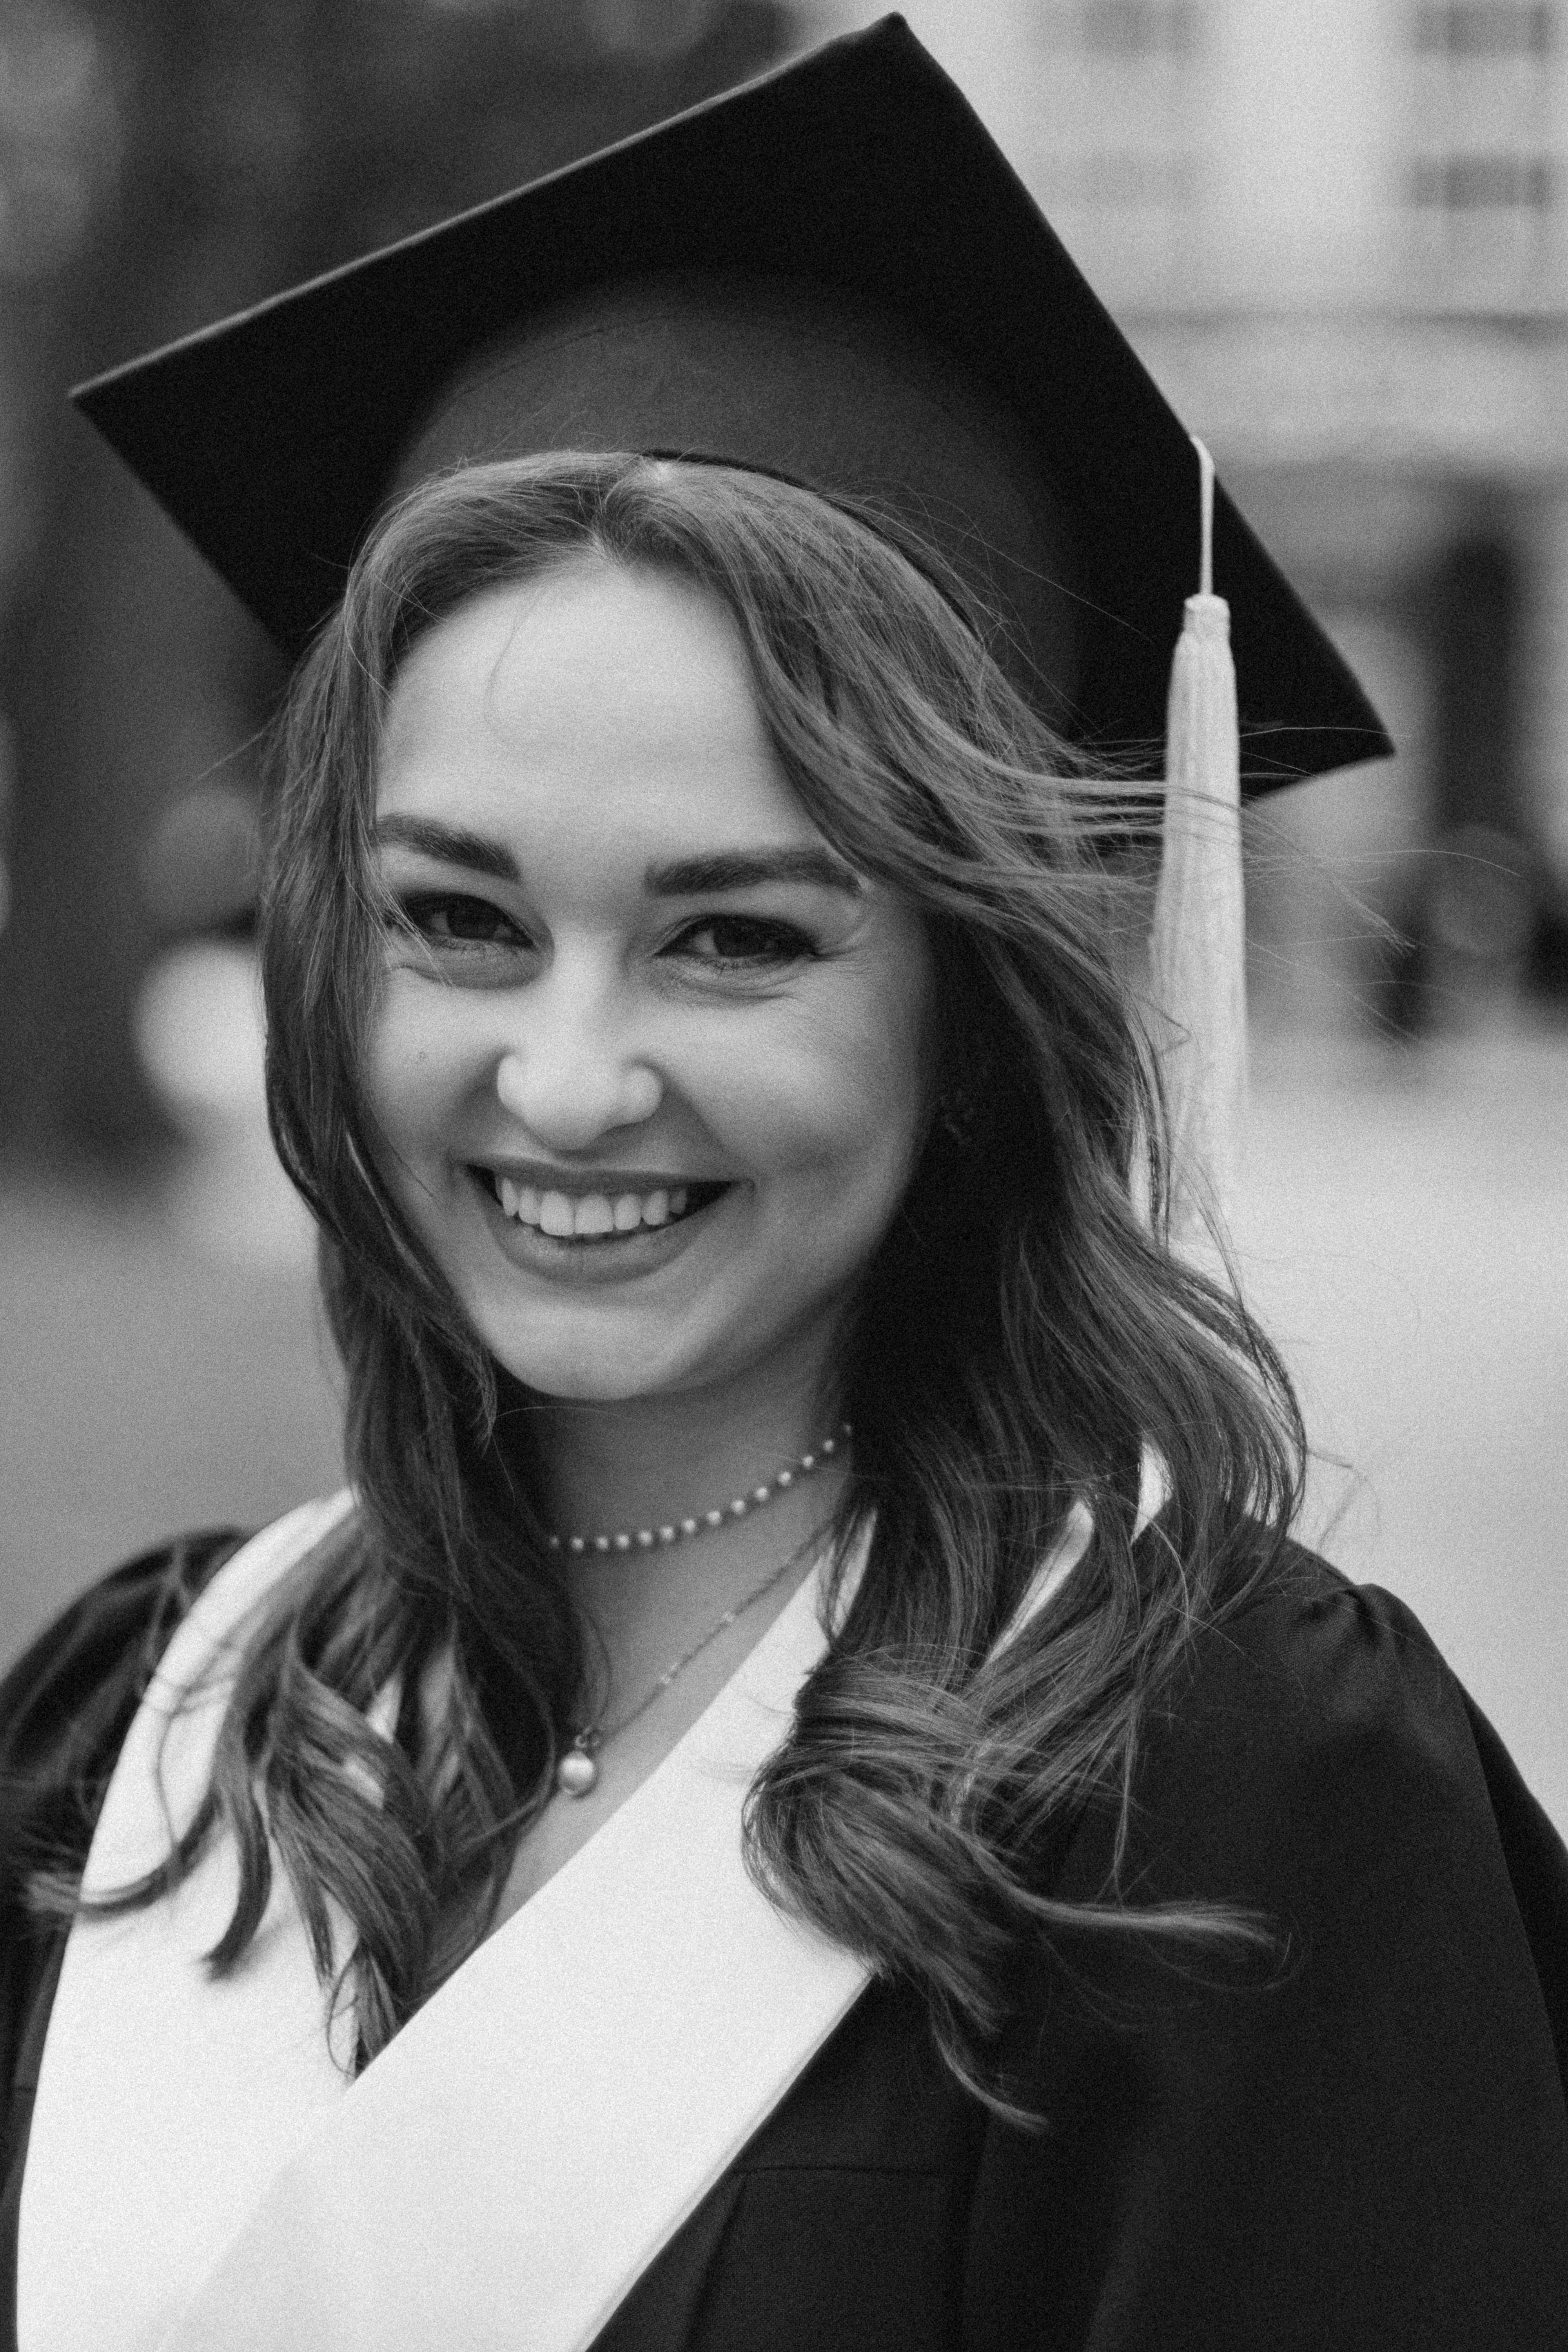 Une femme sourit pendant la remise des diplômes | Source : Pexels